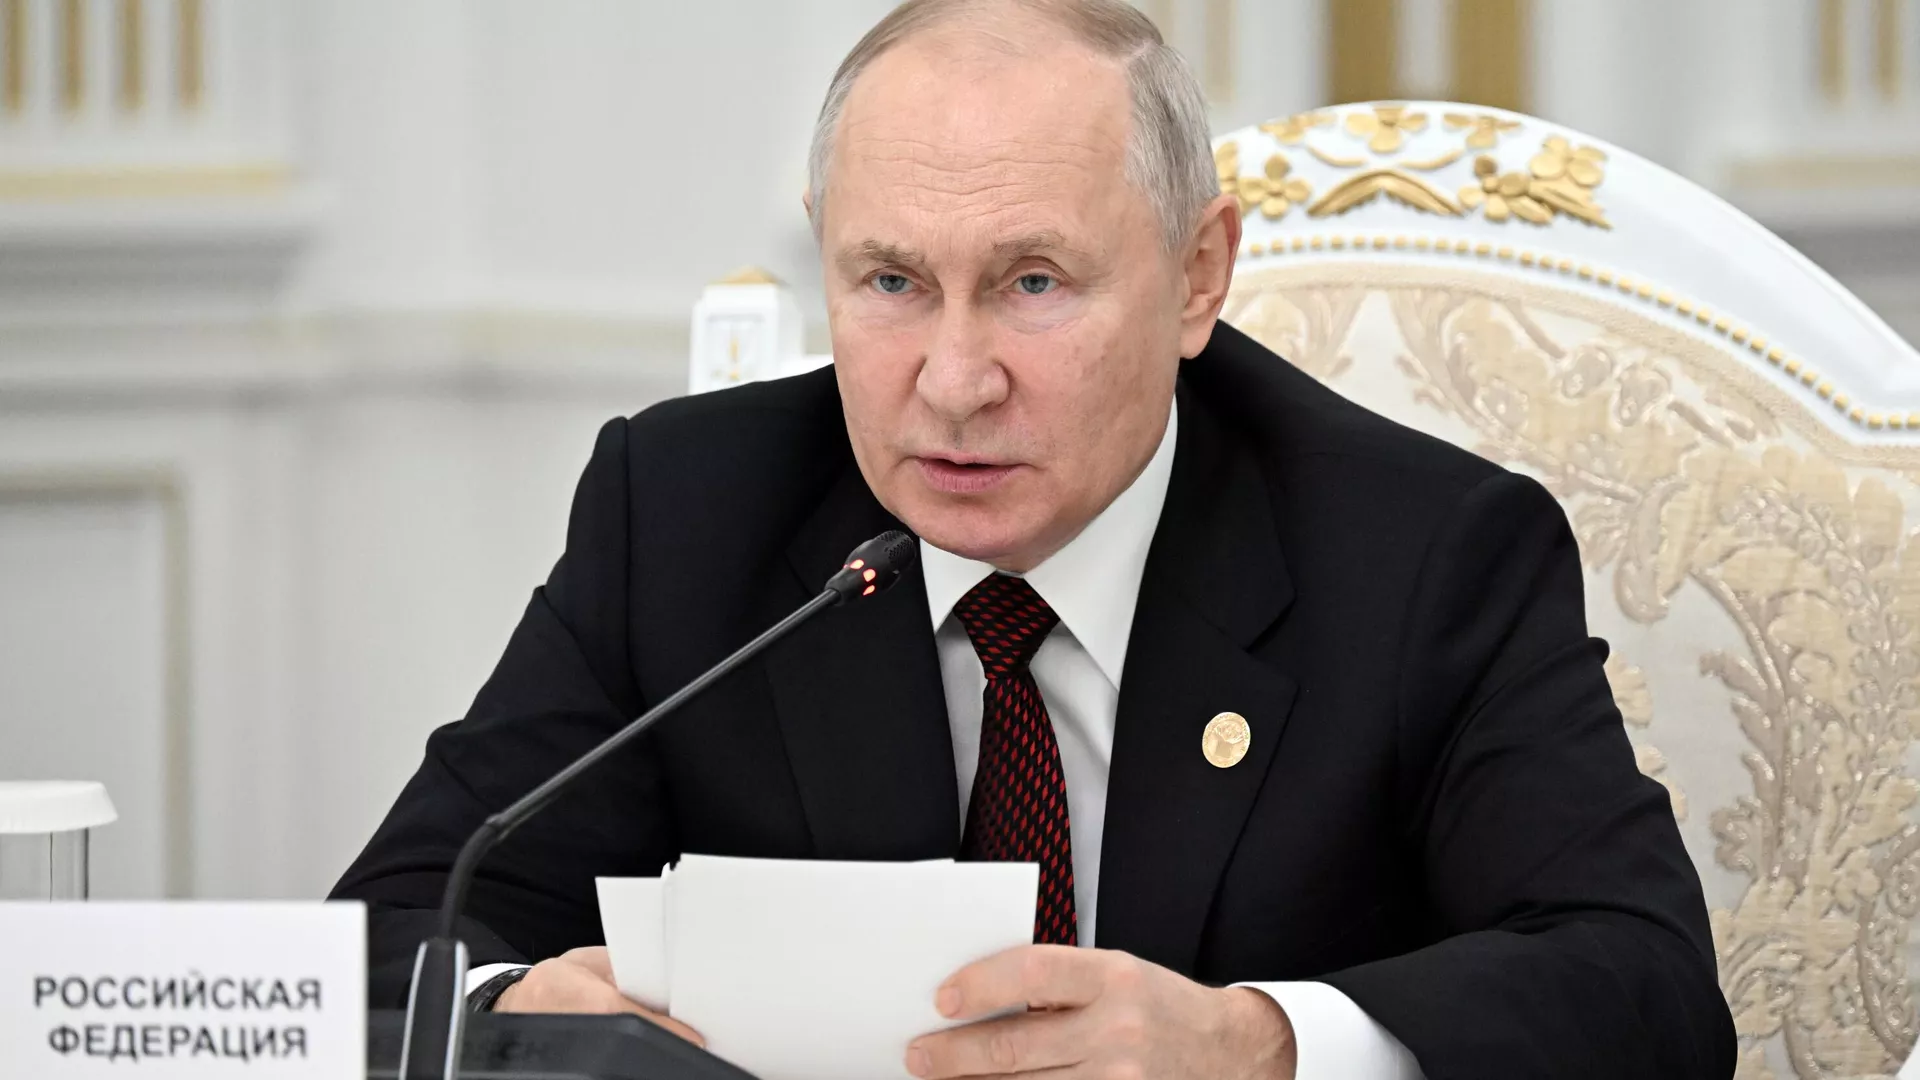 «Están enredados»: Putin dice que Occidente ha golpeado su propia economía con las sanciones